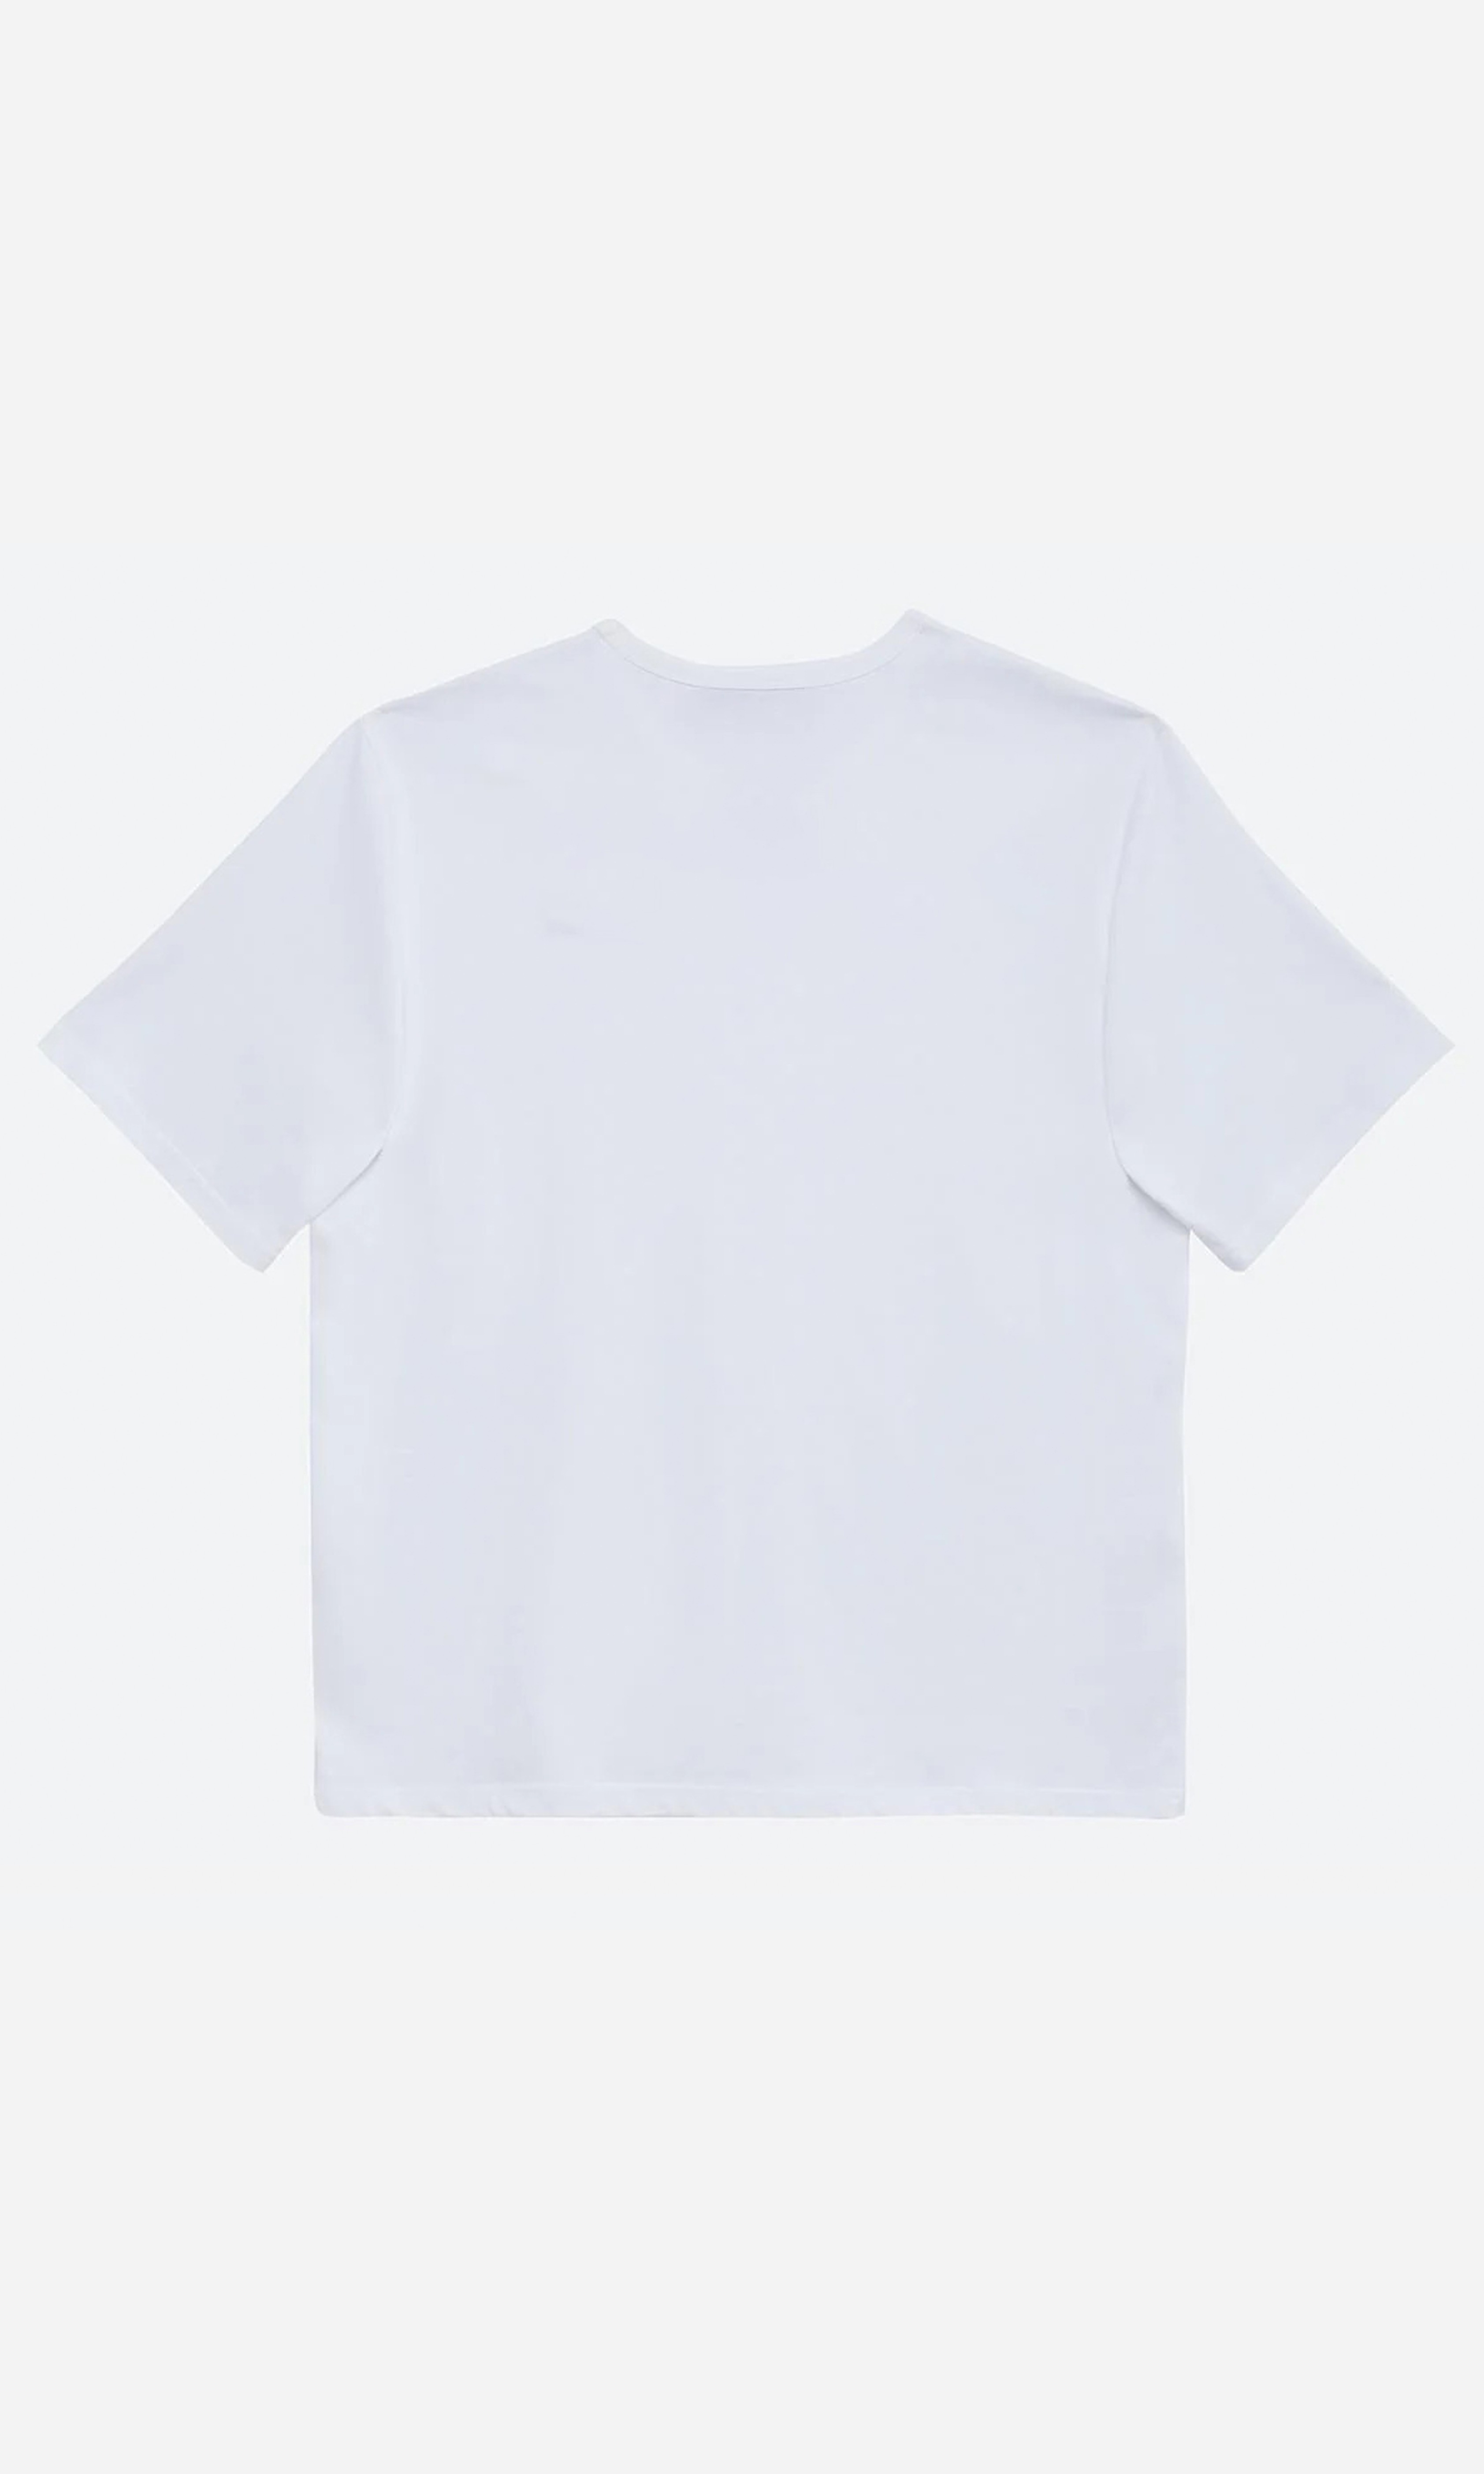 Design Studio Oversize Baskılı Unisex T-Shirt - Beyaz